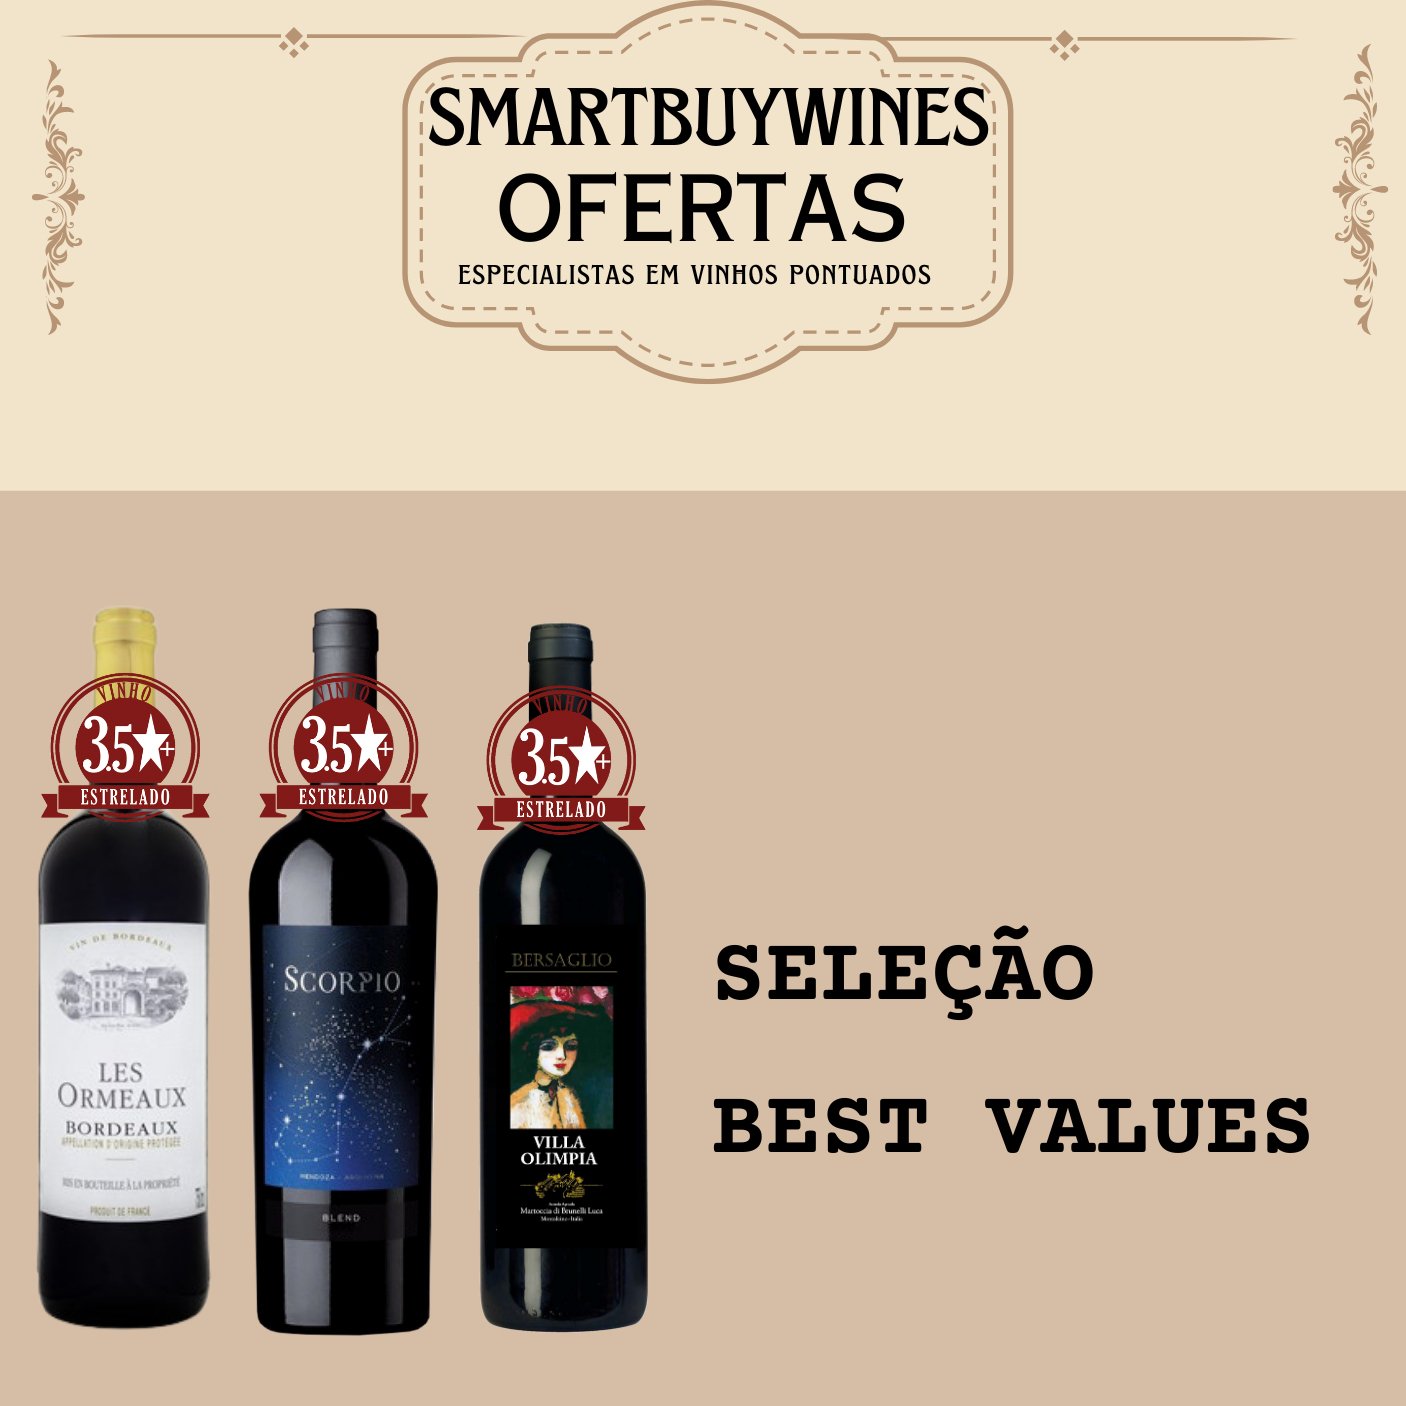 Seleção em oferta - Best Values - caixa de 3 vinhos - SmartBuyWines.com.br